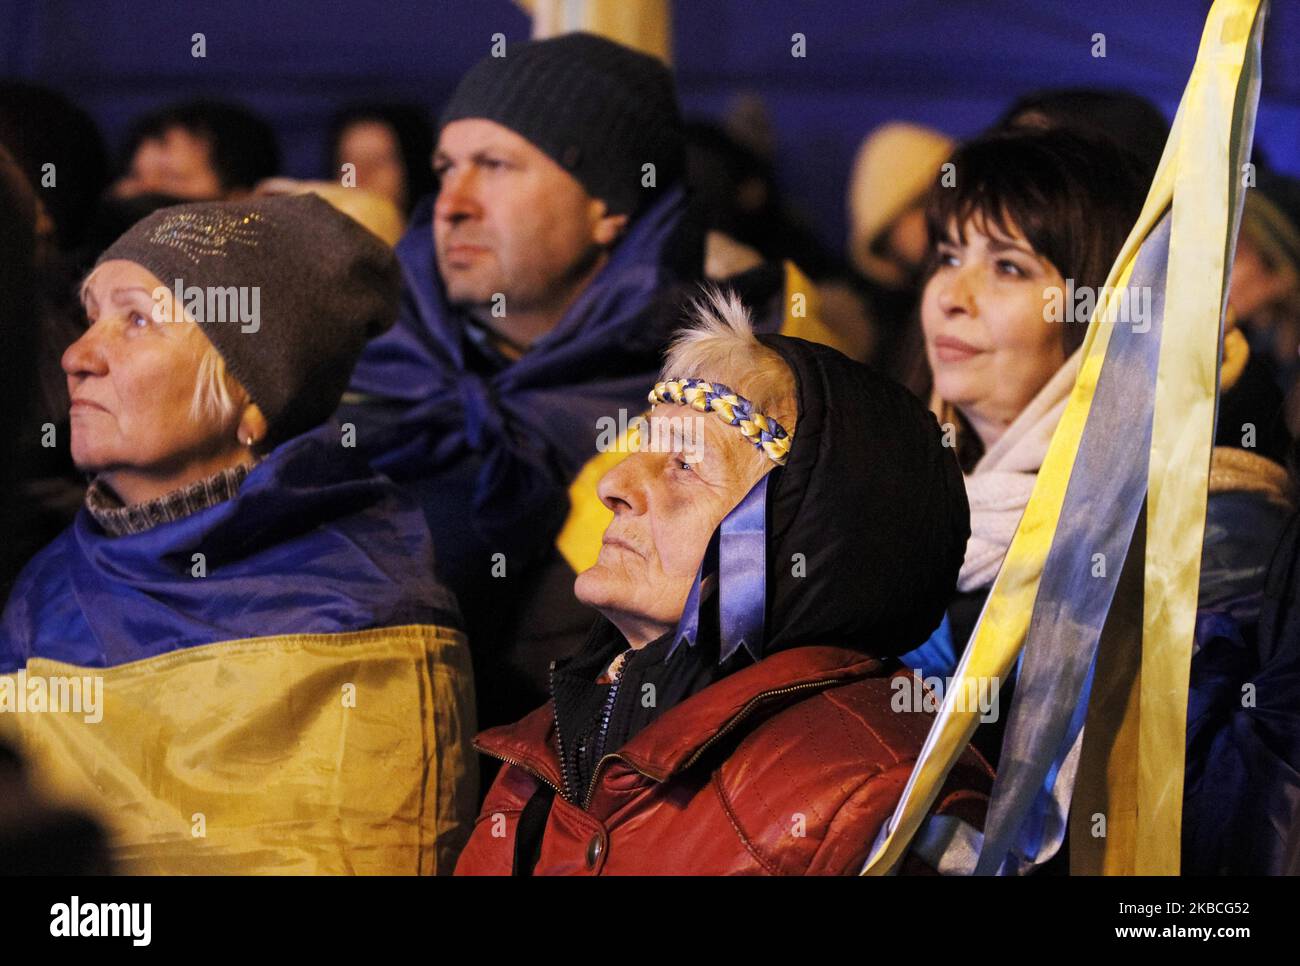 Die Ukrainer beobachten auf einem Bildschirm eine Pressekonferenz der vier führenden Persönlichkeiten der Normandie während einer Kundgebung in der Nähe des ukrainischen Präsidenten Wolodymyr Zelensky Office in Kiew, Ukraine, am 10. Dezember 2019, während des Gipfels im Normandie-Format, der am 9. Dezember in Paris stattfand. Das Treffen der vier führenden Persönlichkeiten der Normandie, der ukrainische Präsident Volodymyr Zelensky, der russische Präsident Wladimir Putin, die deutsche Bundeskanzlerin Angela Merkel und der französische Präsident Emmanuel Macron, fand am 9. Dezember 2019 in Paris statt. (Foto von STR/NurPhoto) Stockfoto